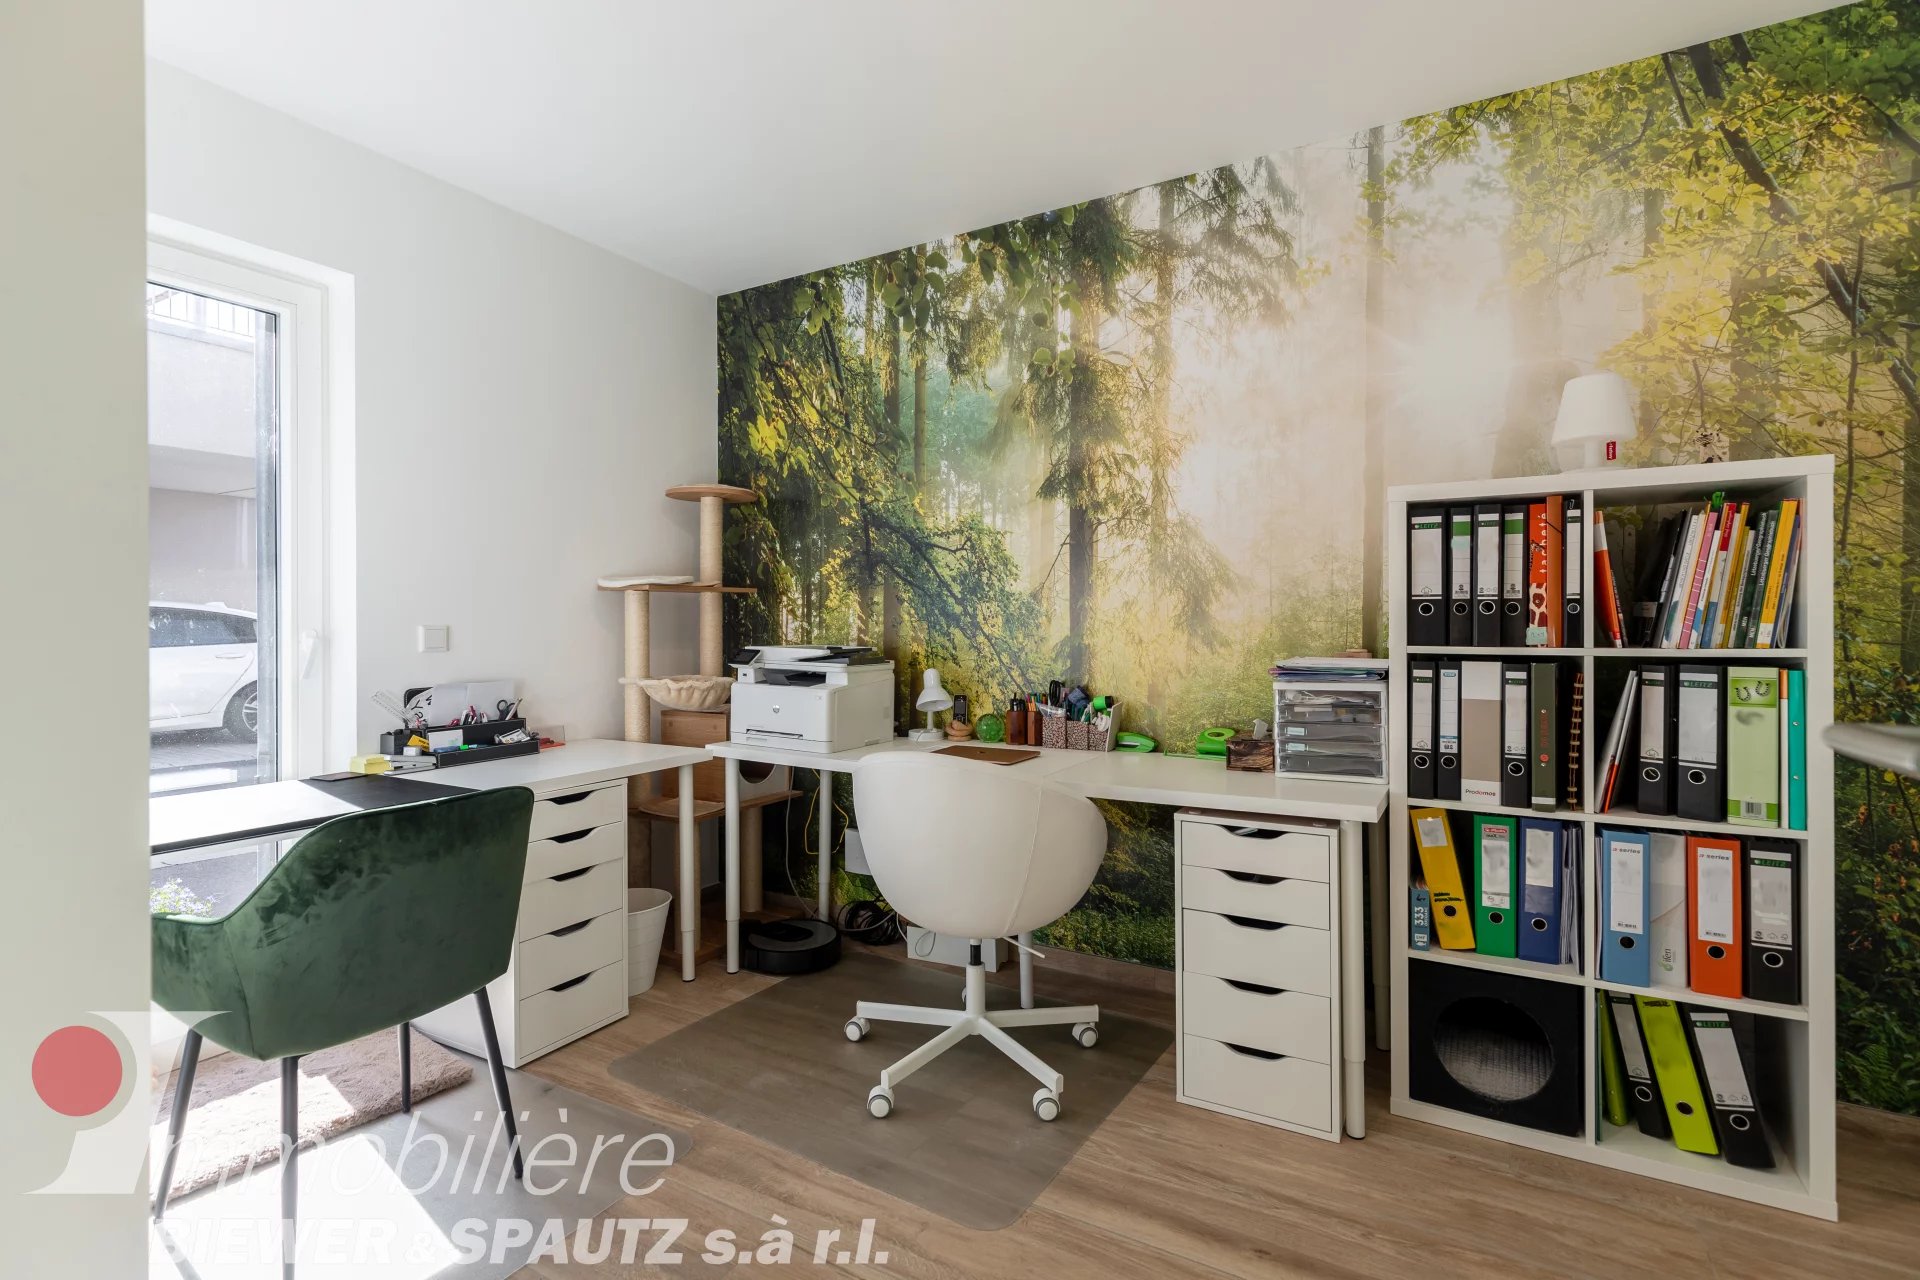 UNDER SALES AGREEMENT - Triplex with 3 bedrooms in Niederanven